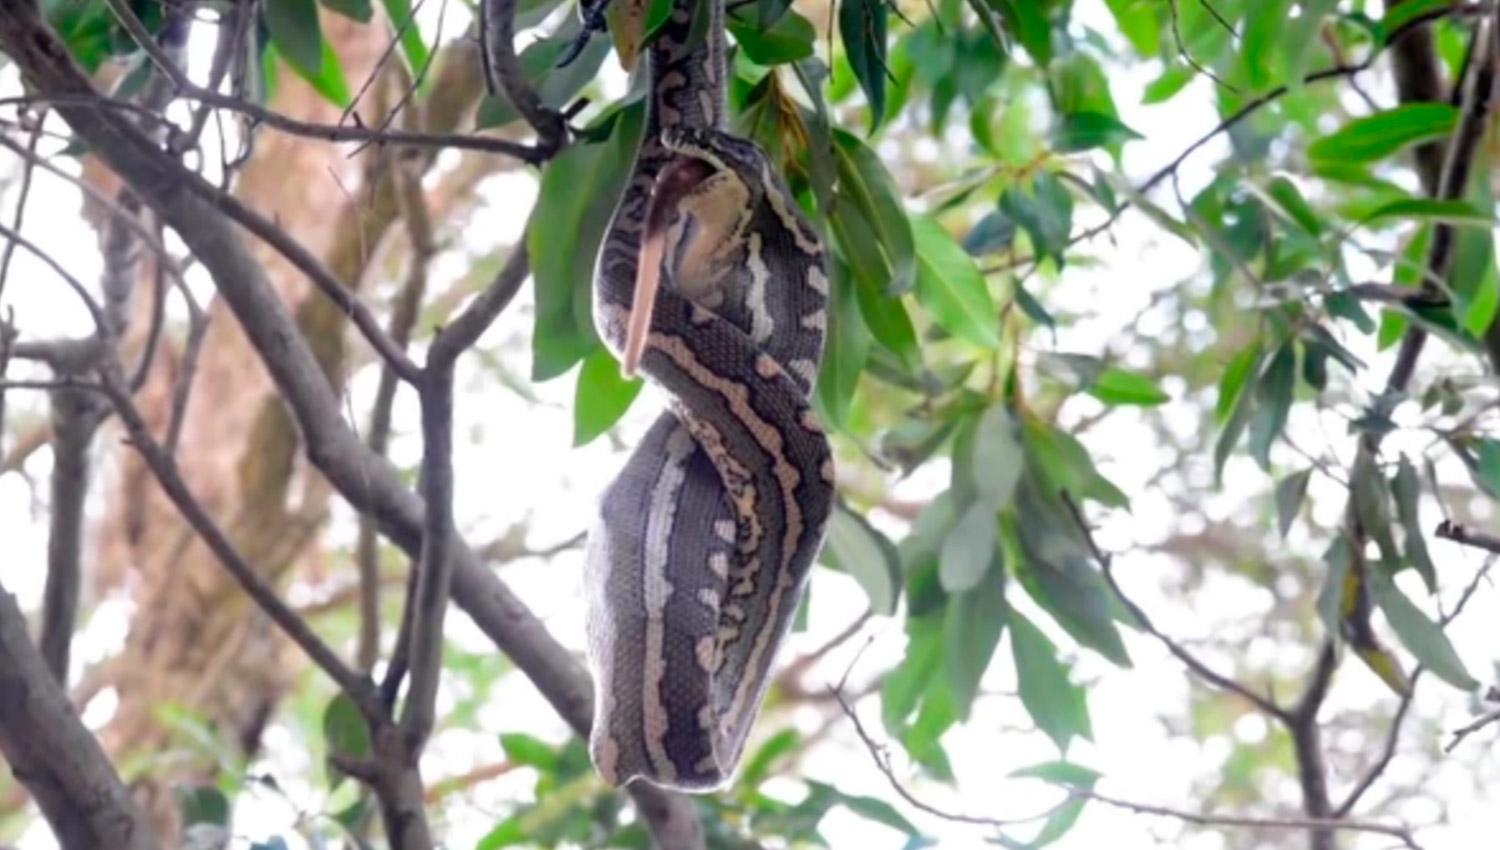 EN EL ÁRBOL. La serpiente reapareció de manera impactante luego de varios días de ausencia. CAPTURA DE VIDEO